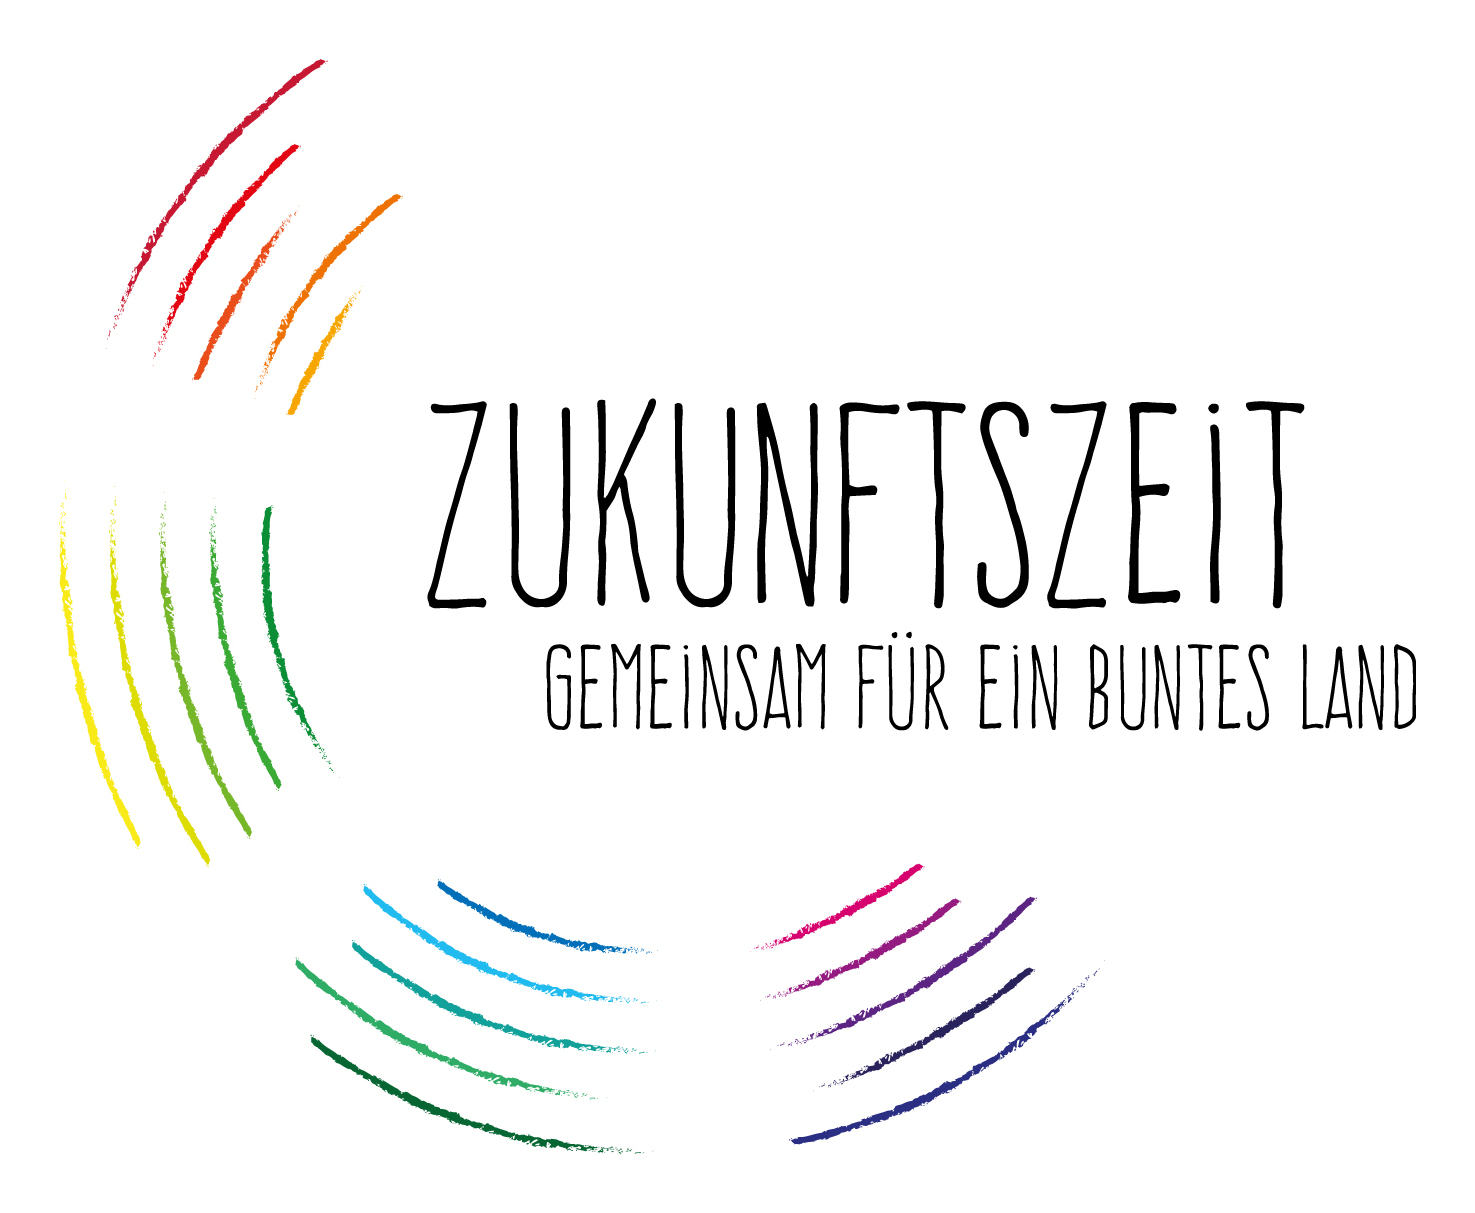 http://www.zukunftszeit.de/fileadmin/bdkj/news/2016/Zukunftszeit/zukunftszeit_Logo_RGB_web.jpg